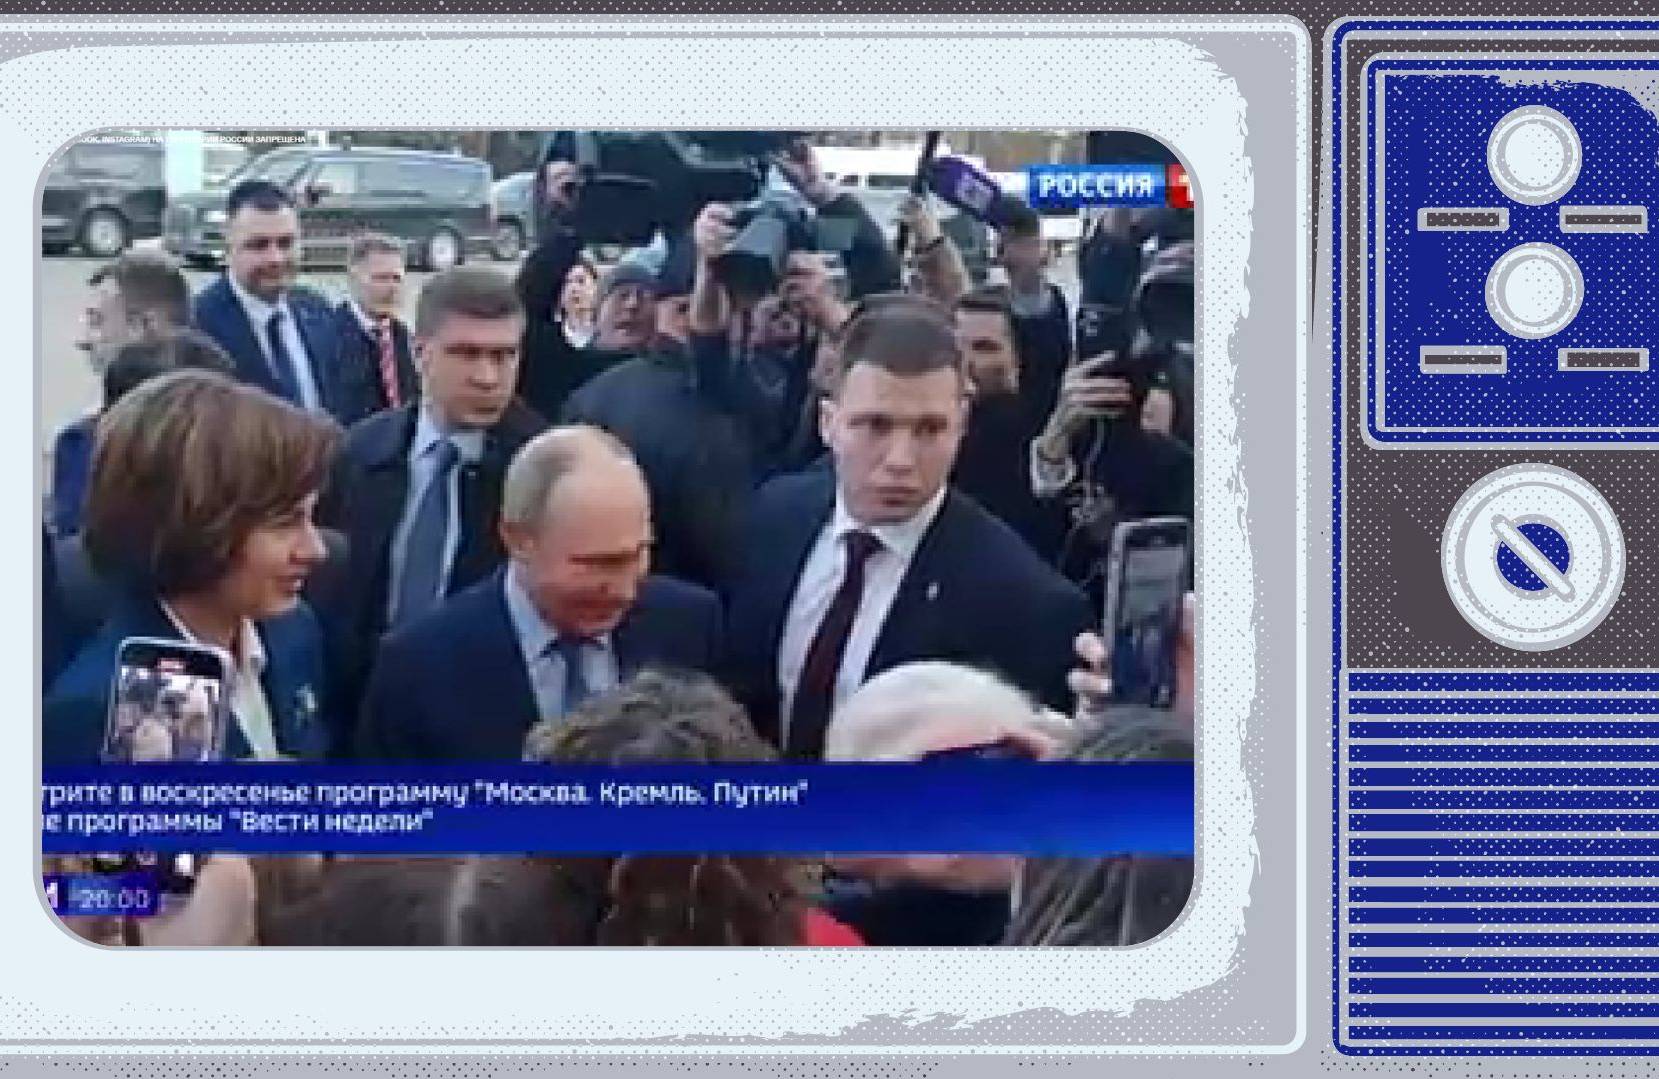 Putin w tłumie ochroniarzy podchodzi do ludzi. Screen wstawiony w ramke starego telewizora